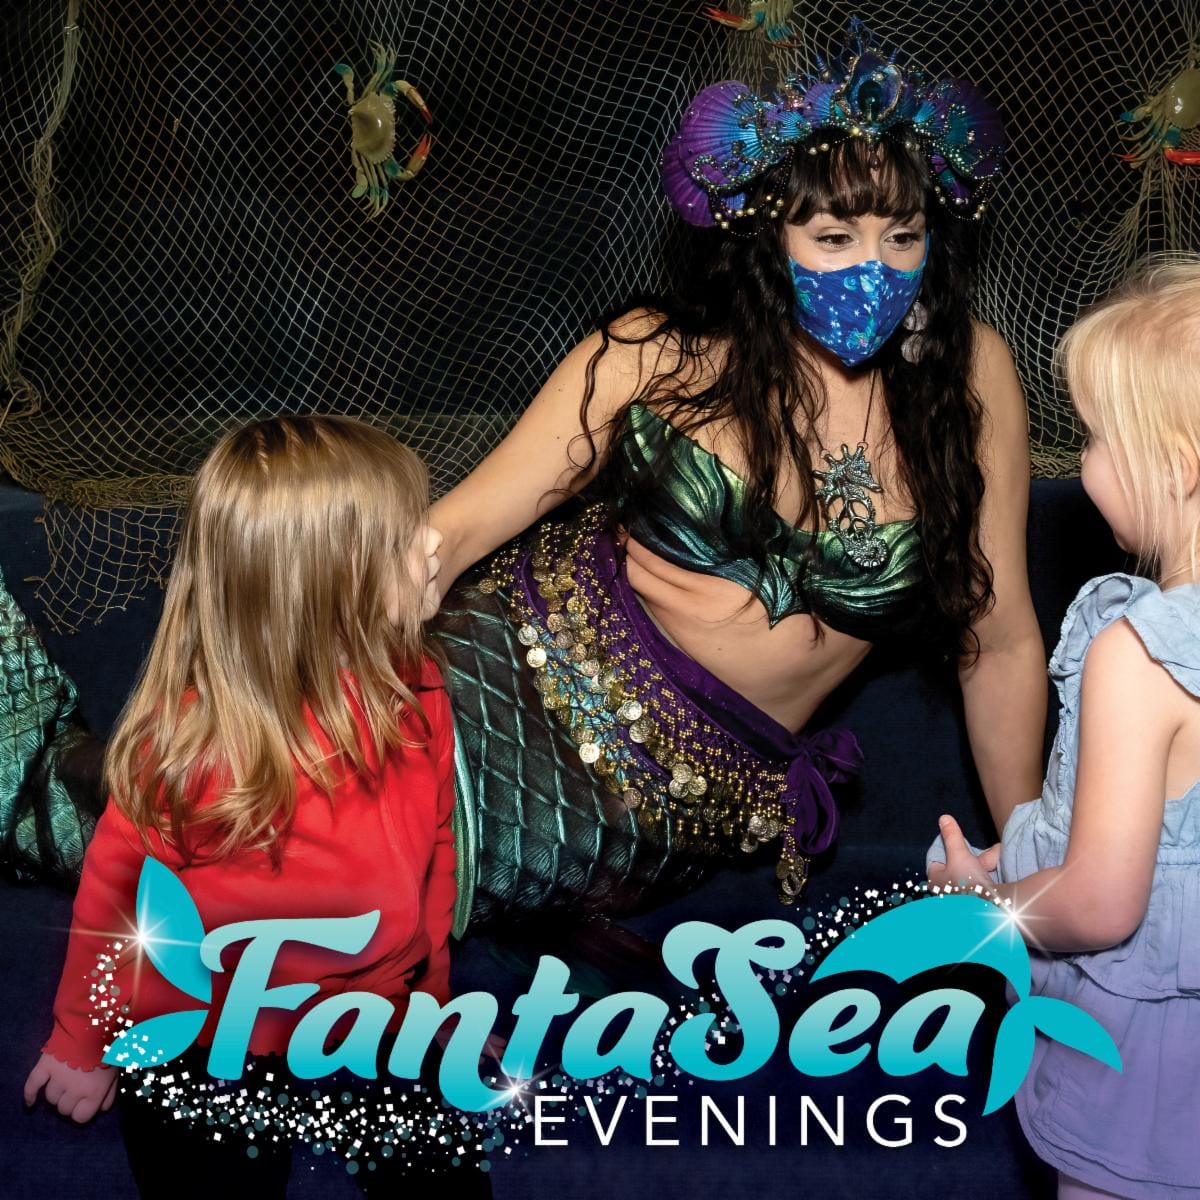 Fantasea Evenings at the Virginia Aquarium